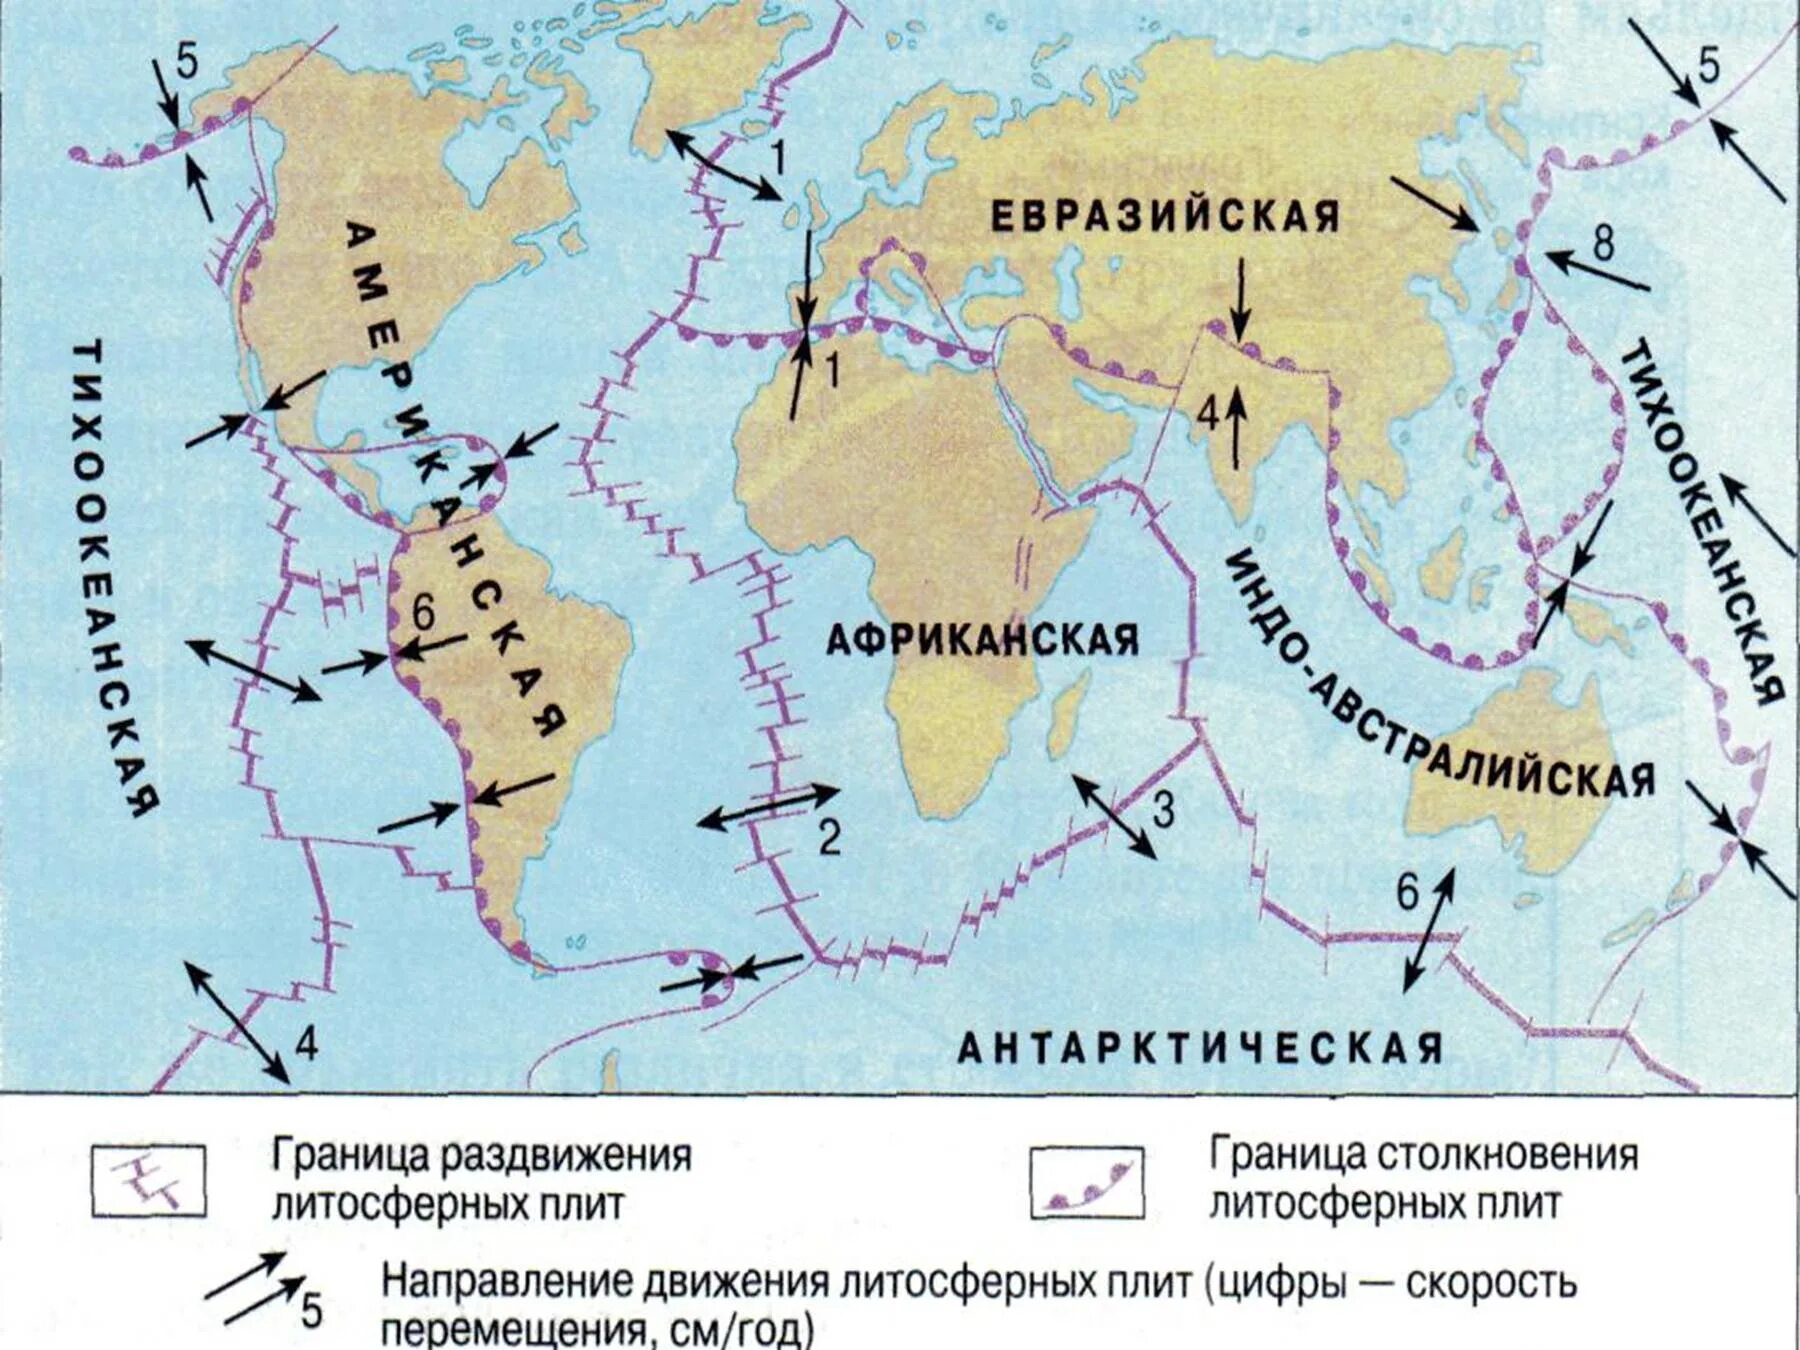 Самая крупная литосферная плита. Направление движения литосферных плит. Карта движения литосферных плит. Направление литосферных плит на карте. Направление движения литосферных плит в индийском океане.